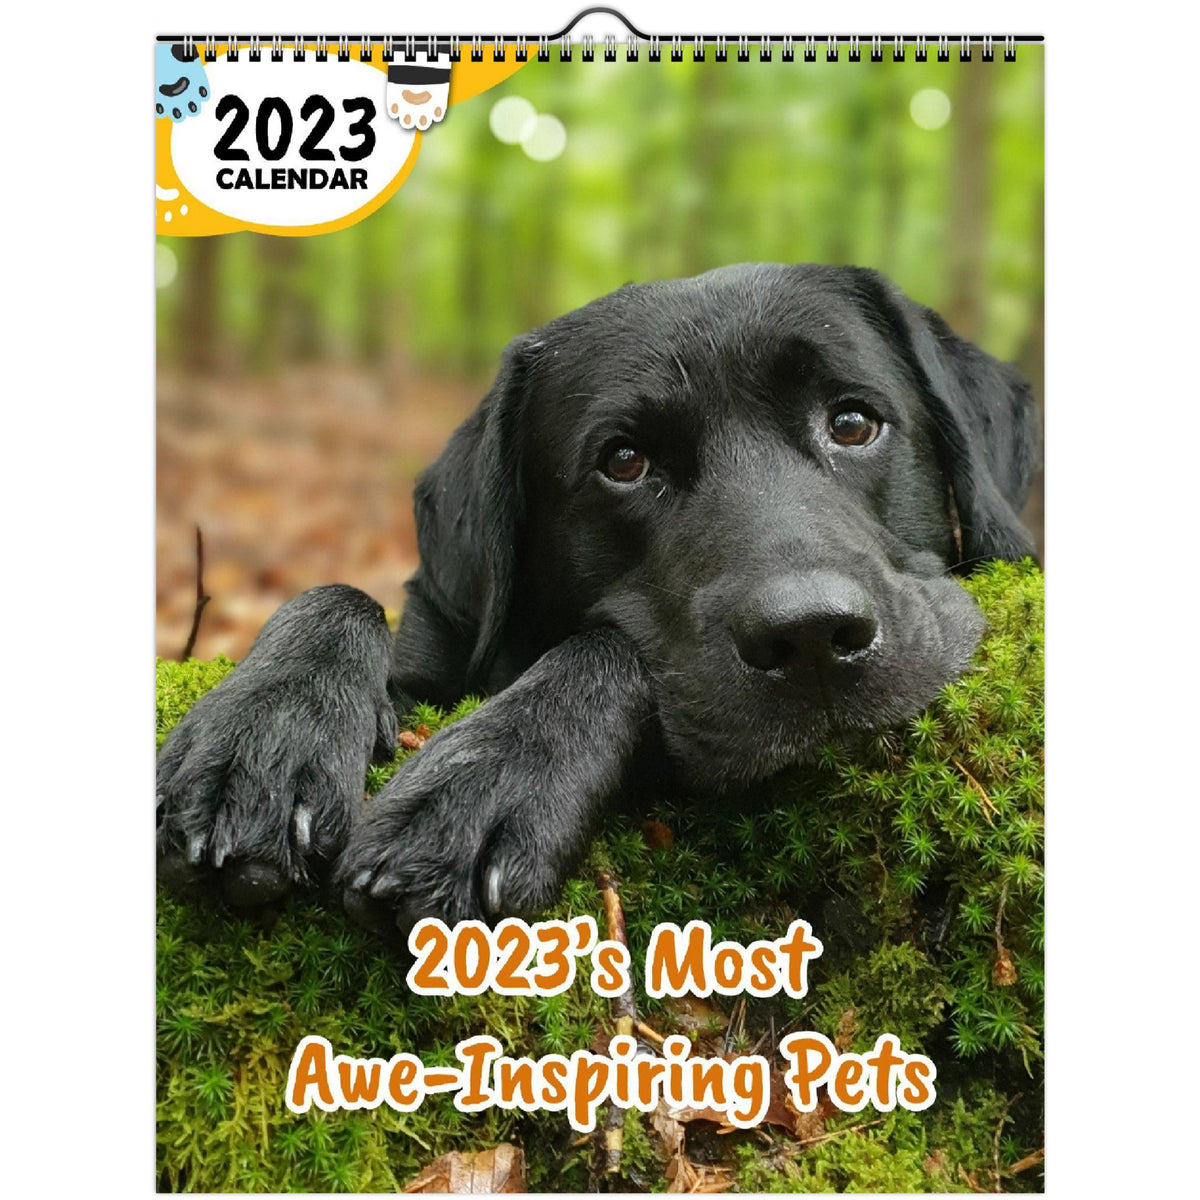 2023's Most AweInspiring Pets 2023 Wall Calendar The Blissful Birder